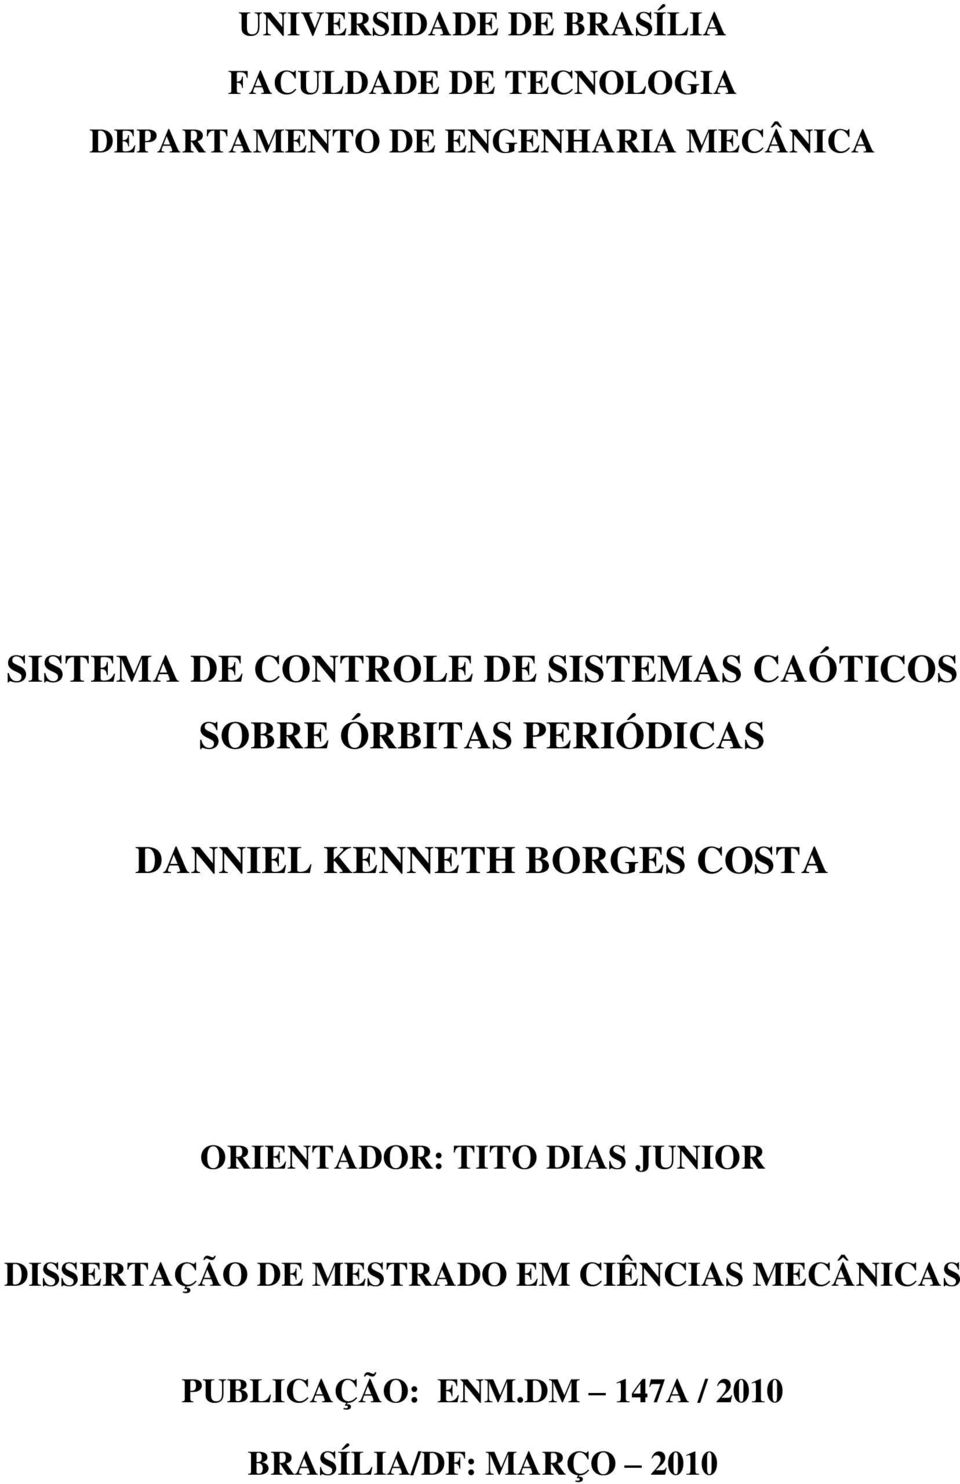 DANNIEL KENNETH BORGES COSTA ORIENTADOR: TITO DIAS JUNIOR DISSERTAÇÃO DE